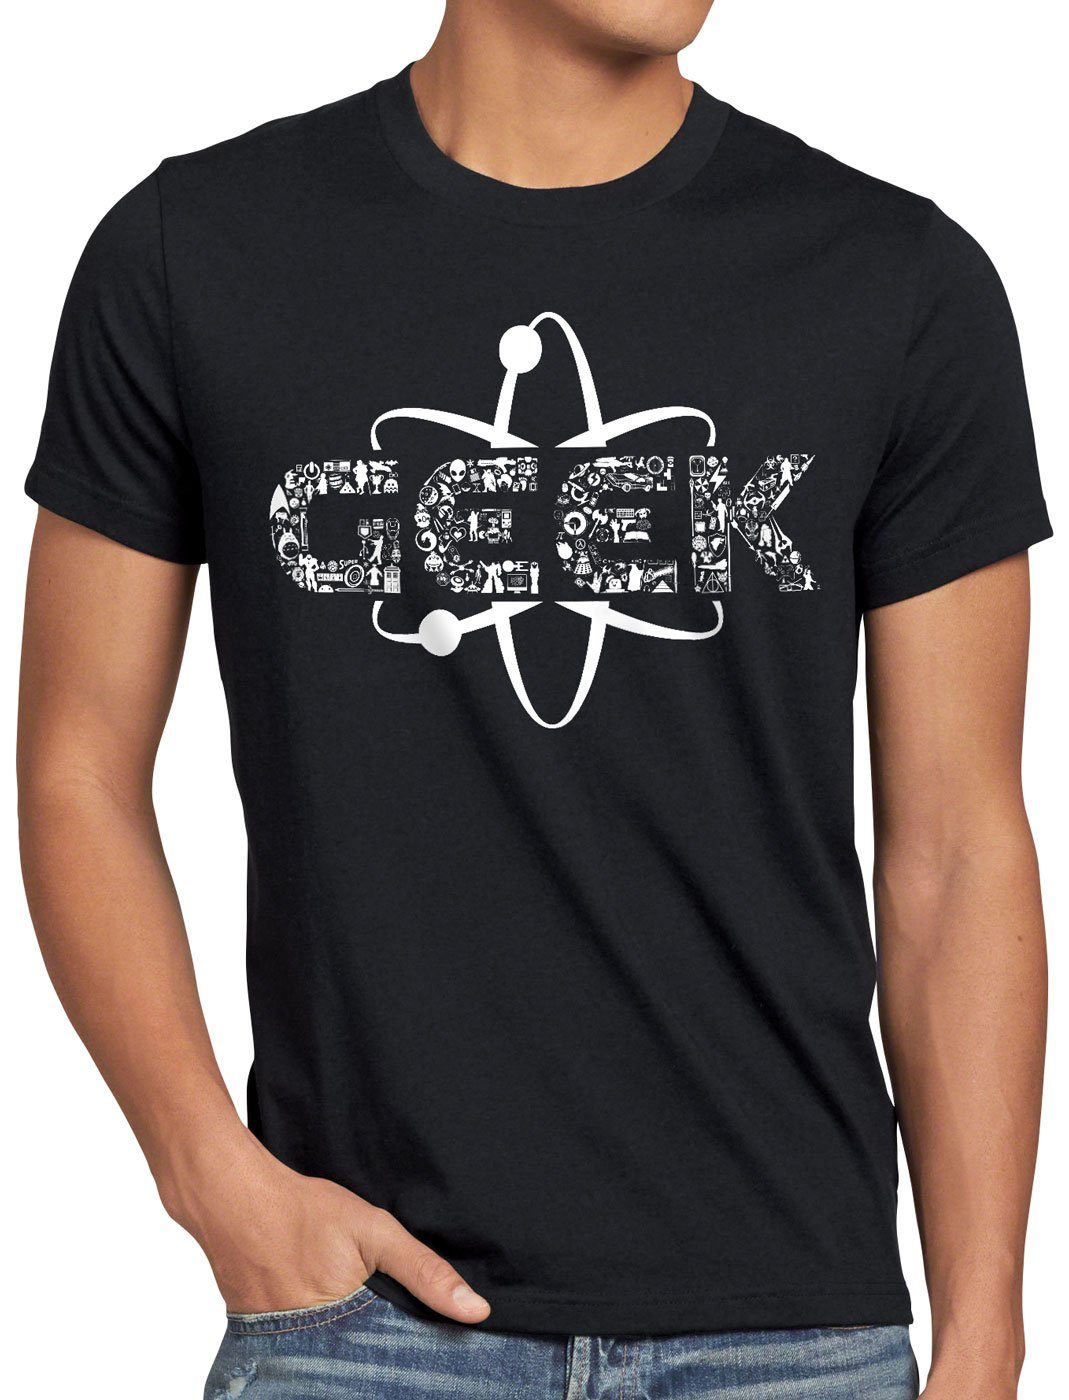 Print-Shirt Nerd Videospiel style3 Gamer T-Shirt Herren schwarz Geek